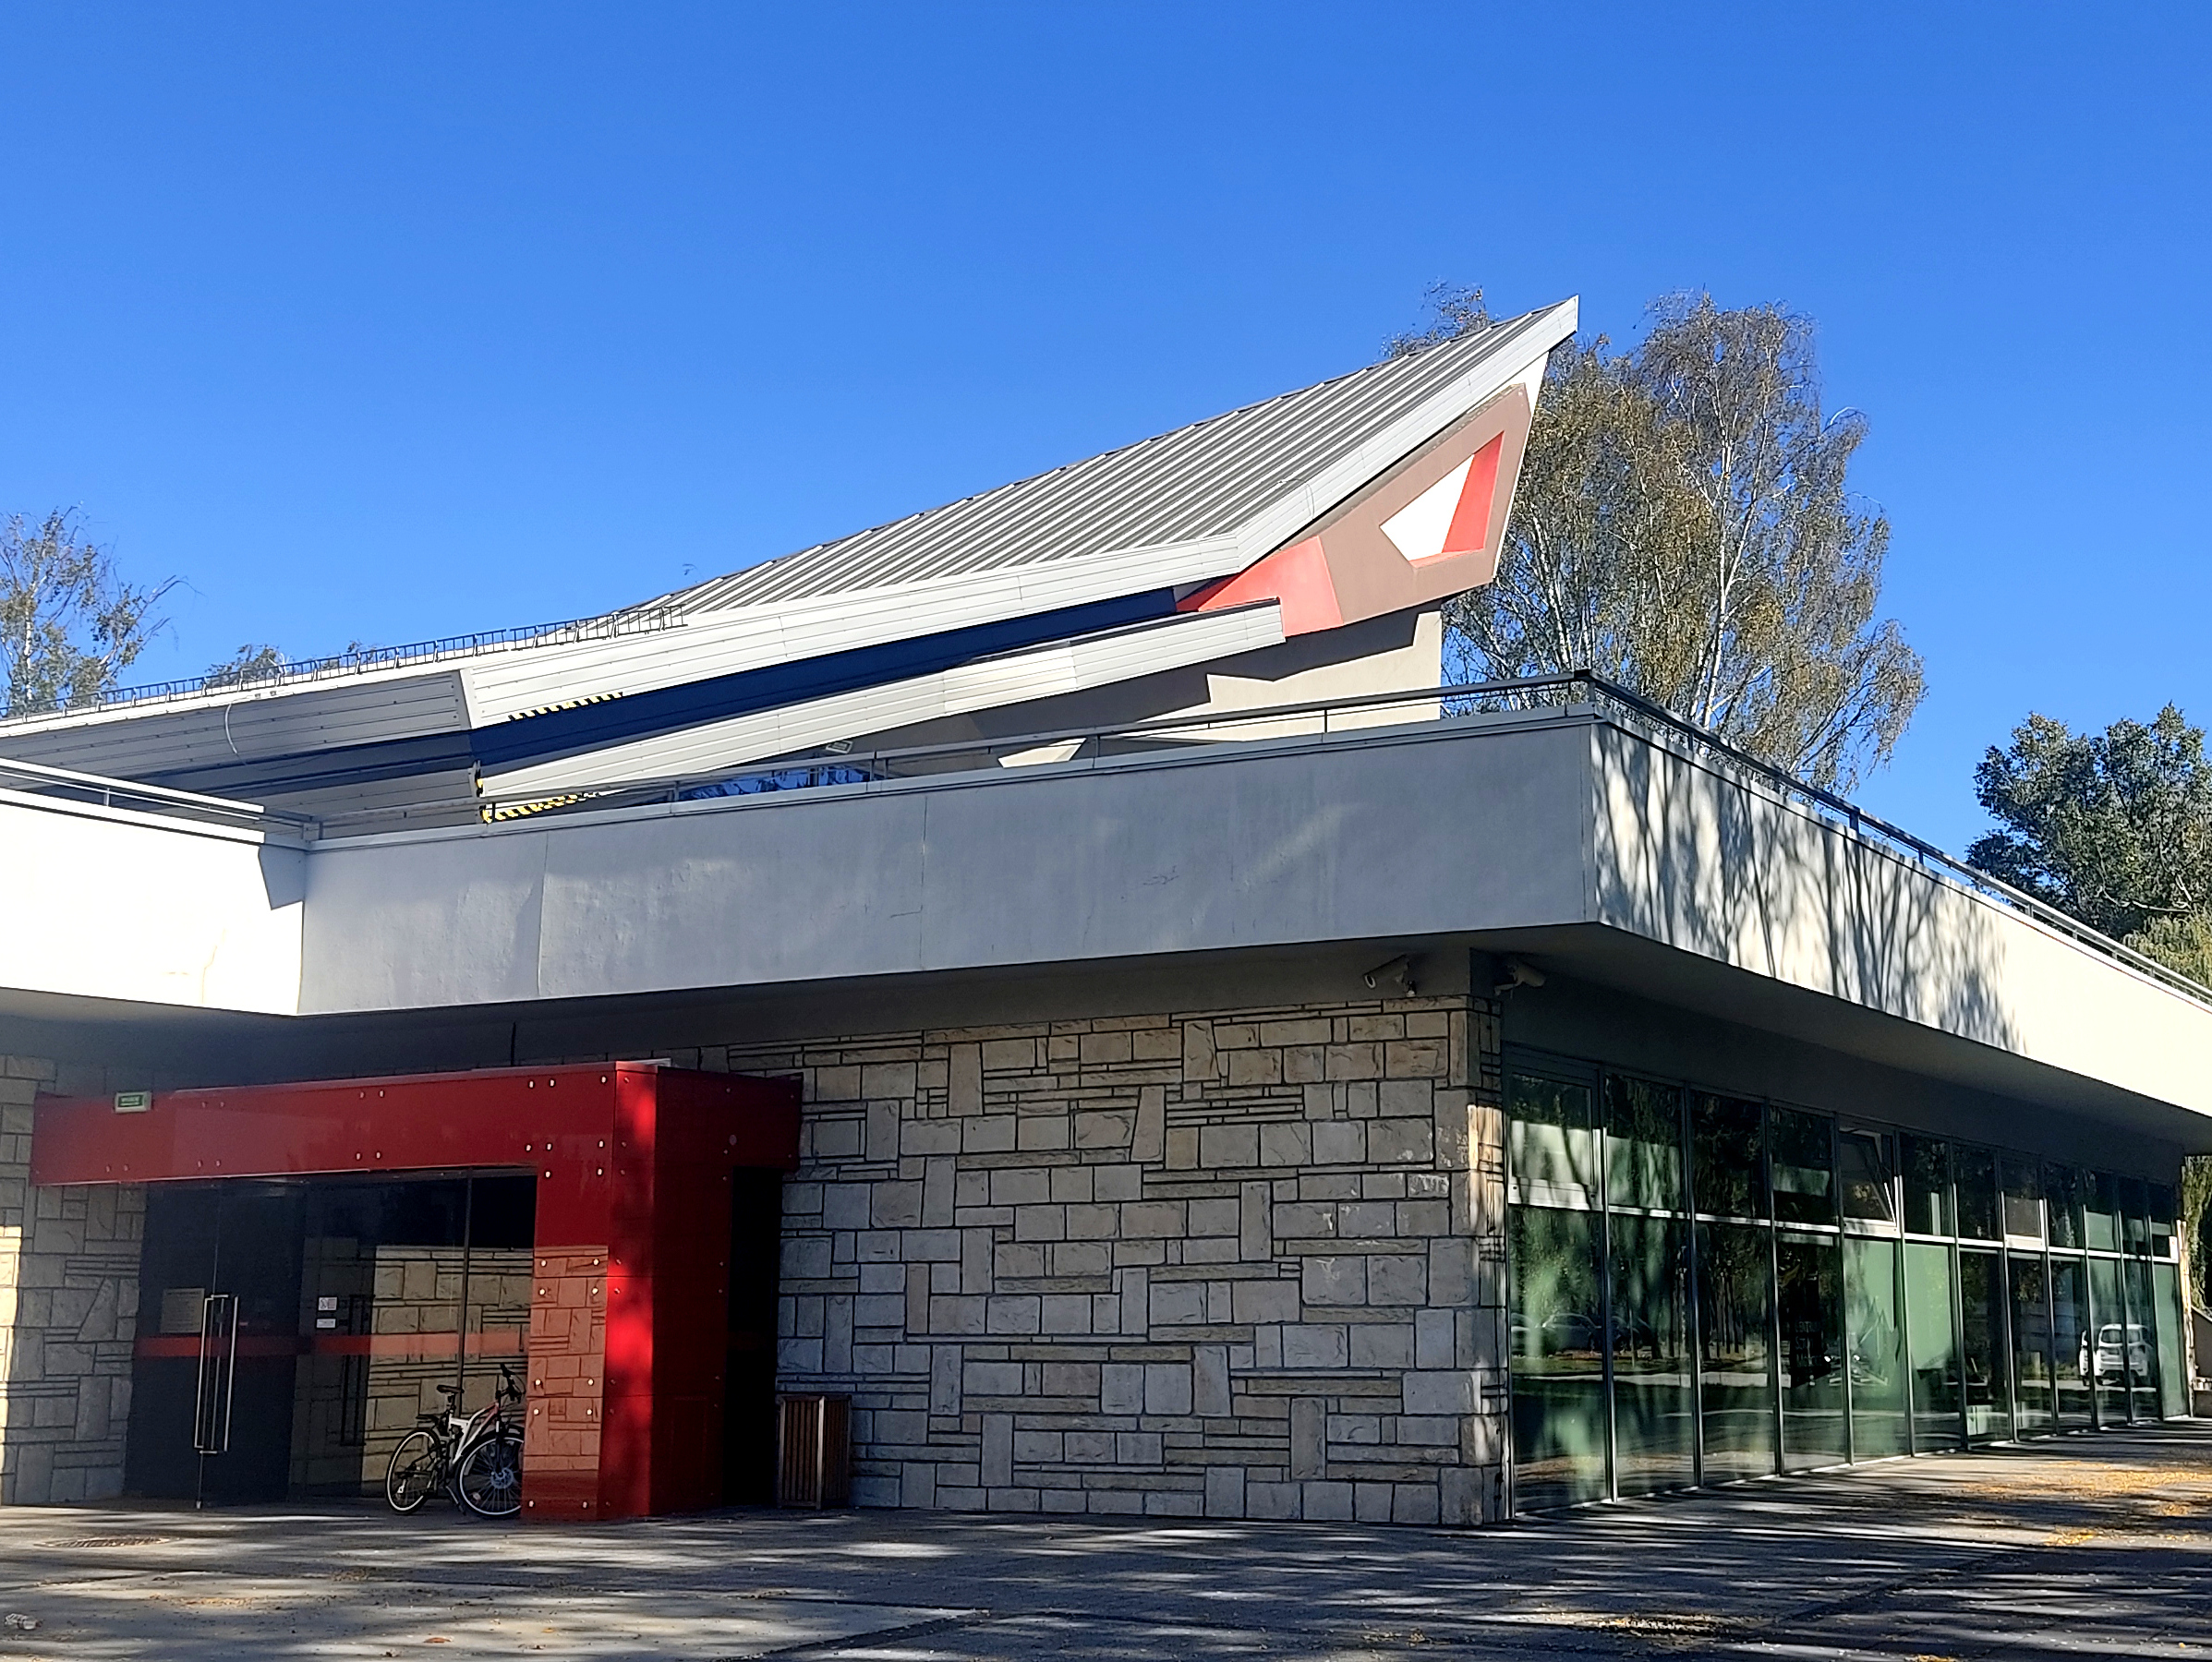 Obramowane na czerwono wejście do parterowego nowoczesnego budynku.